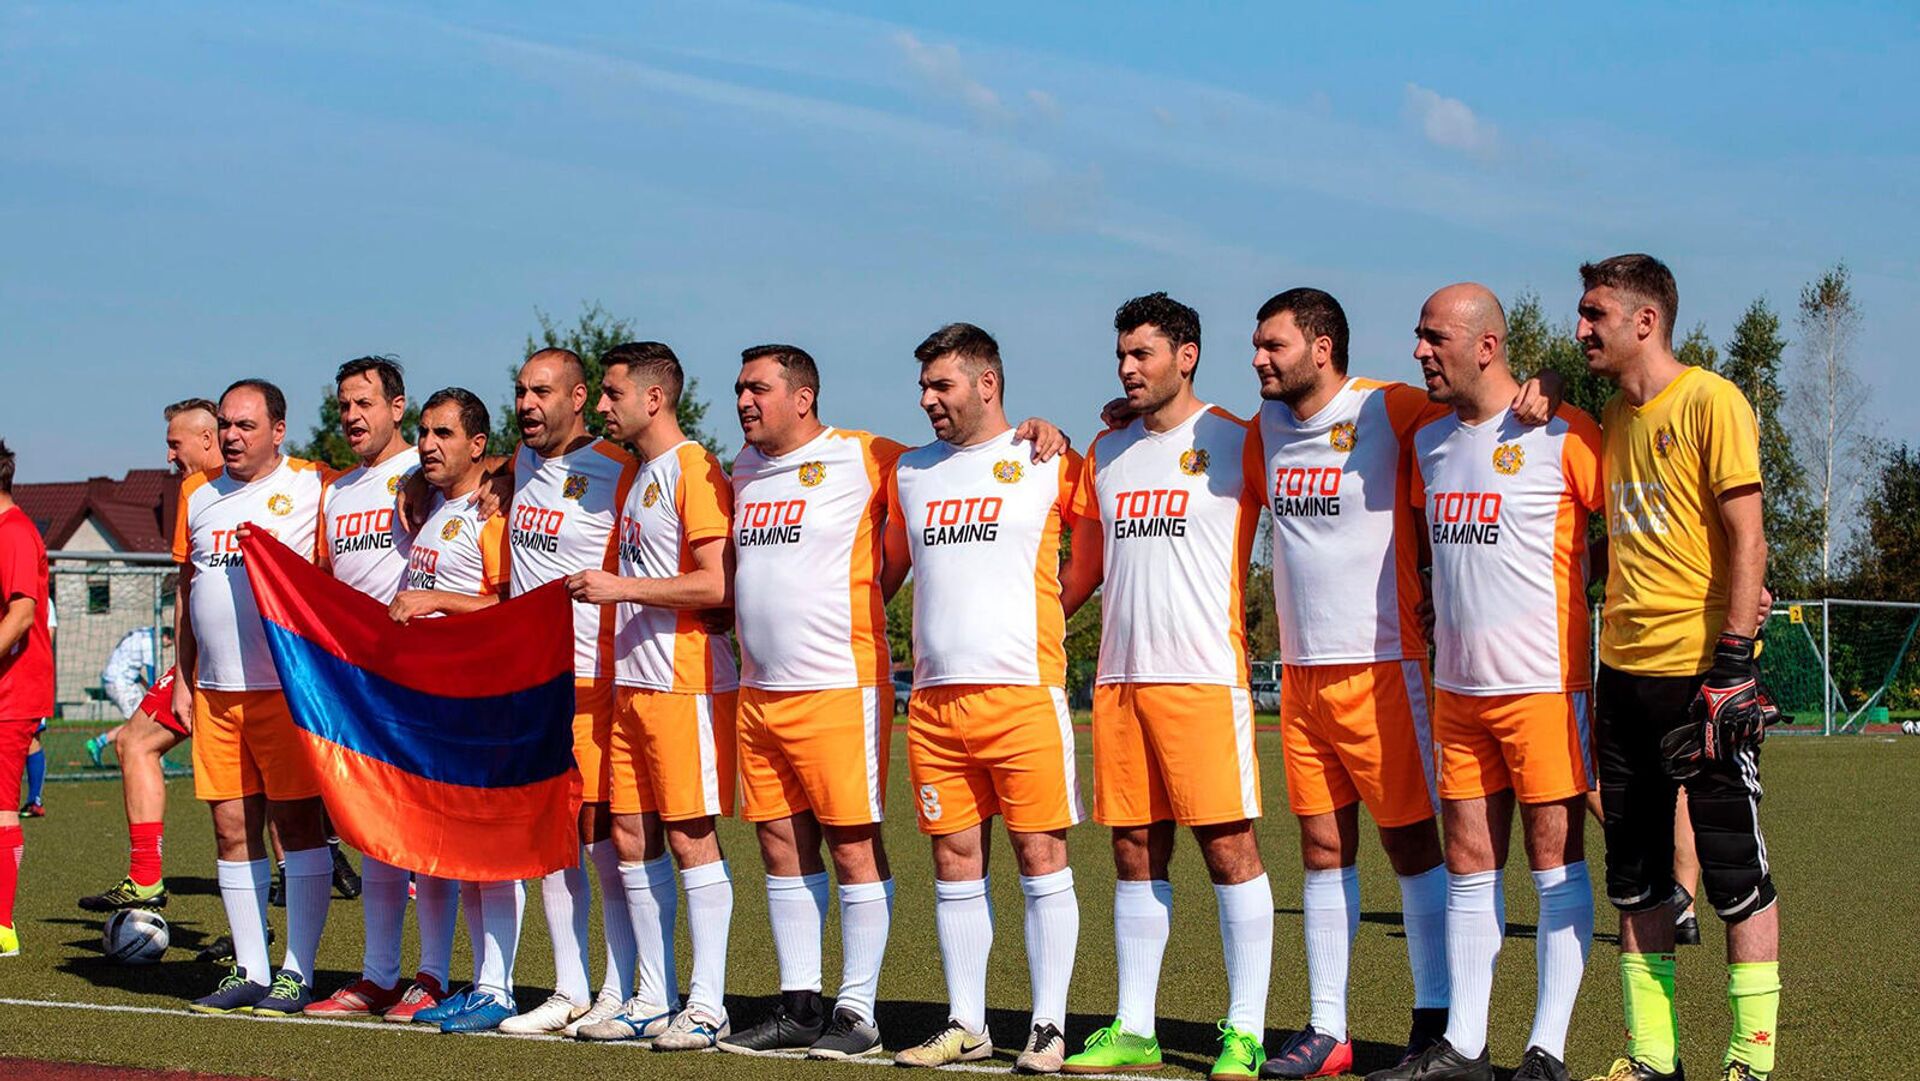 Հայաստանի լրագրողների ֆուտբոլի հավաքականը  Լիտվայում կայացած միջազգային 16-րդ մրցաշարում  զբաղեցրել է 2-րդ տեղը և նվաճել արծաթե մեդալ։ - Sputnik Արմենիա, 1920, 16.09.2021